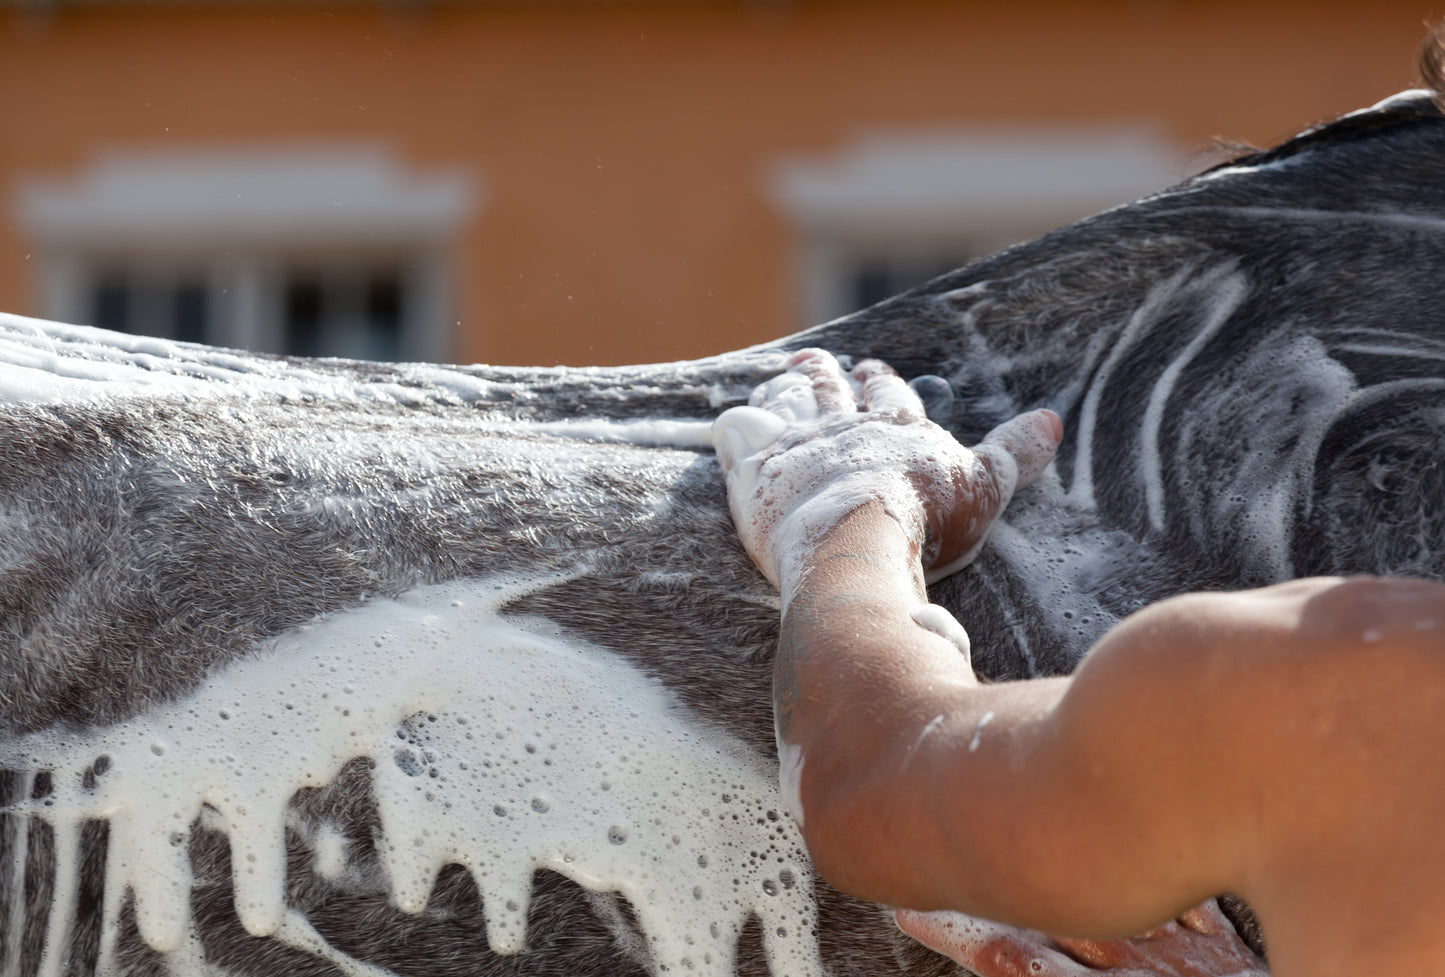 Shampoing naturel pour chevaux aux fleurs de calendulas et lavande